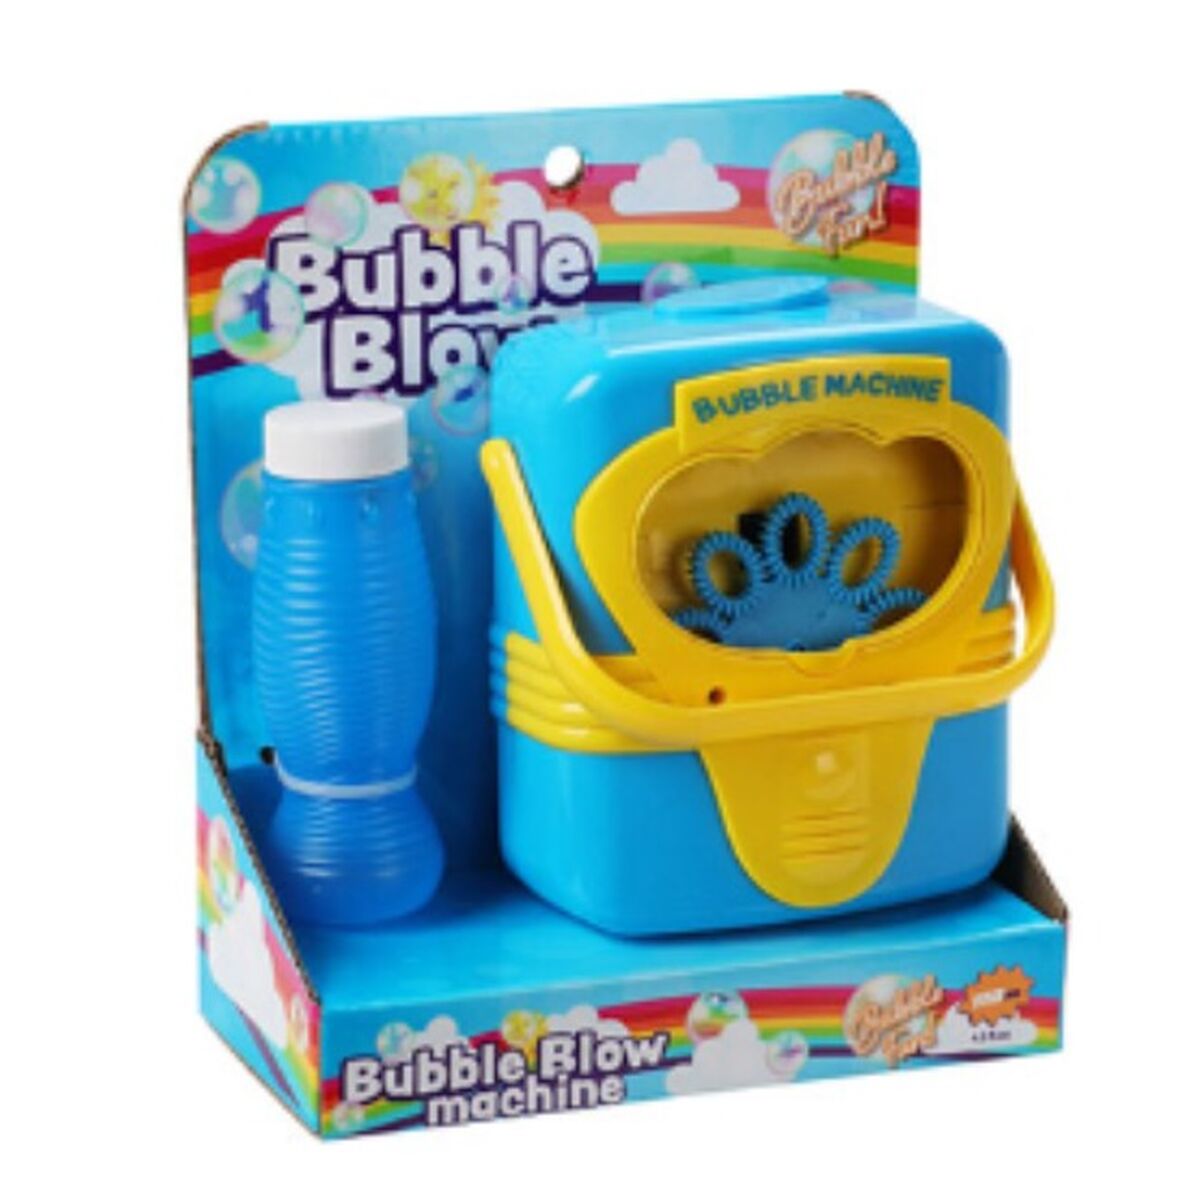 Bubble machine